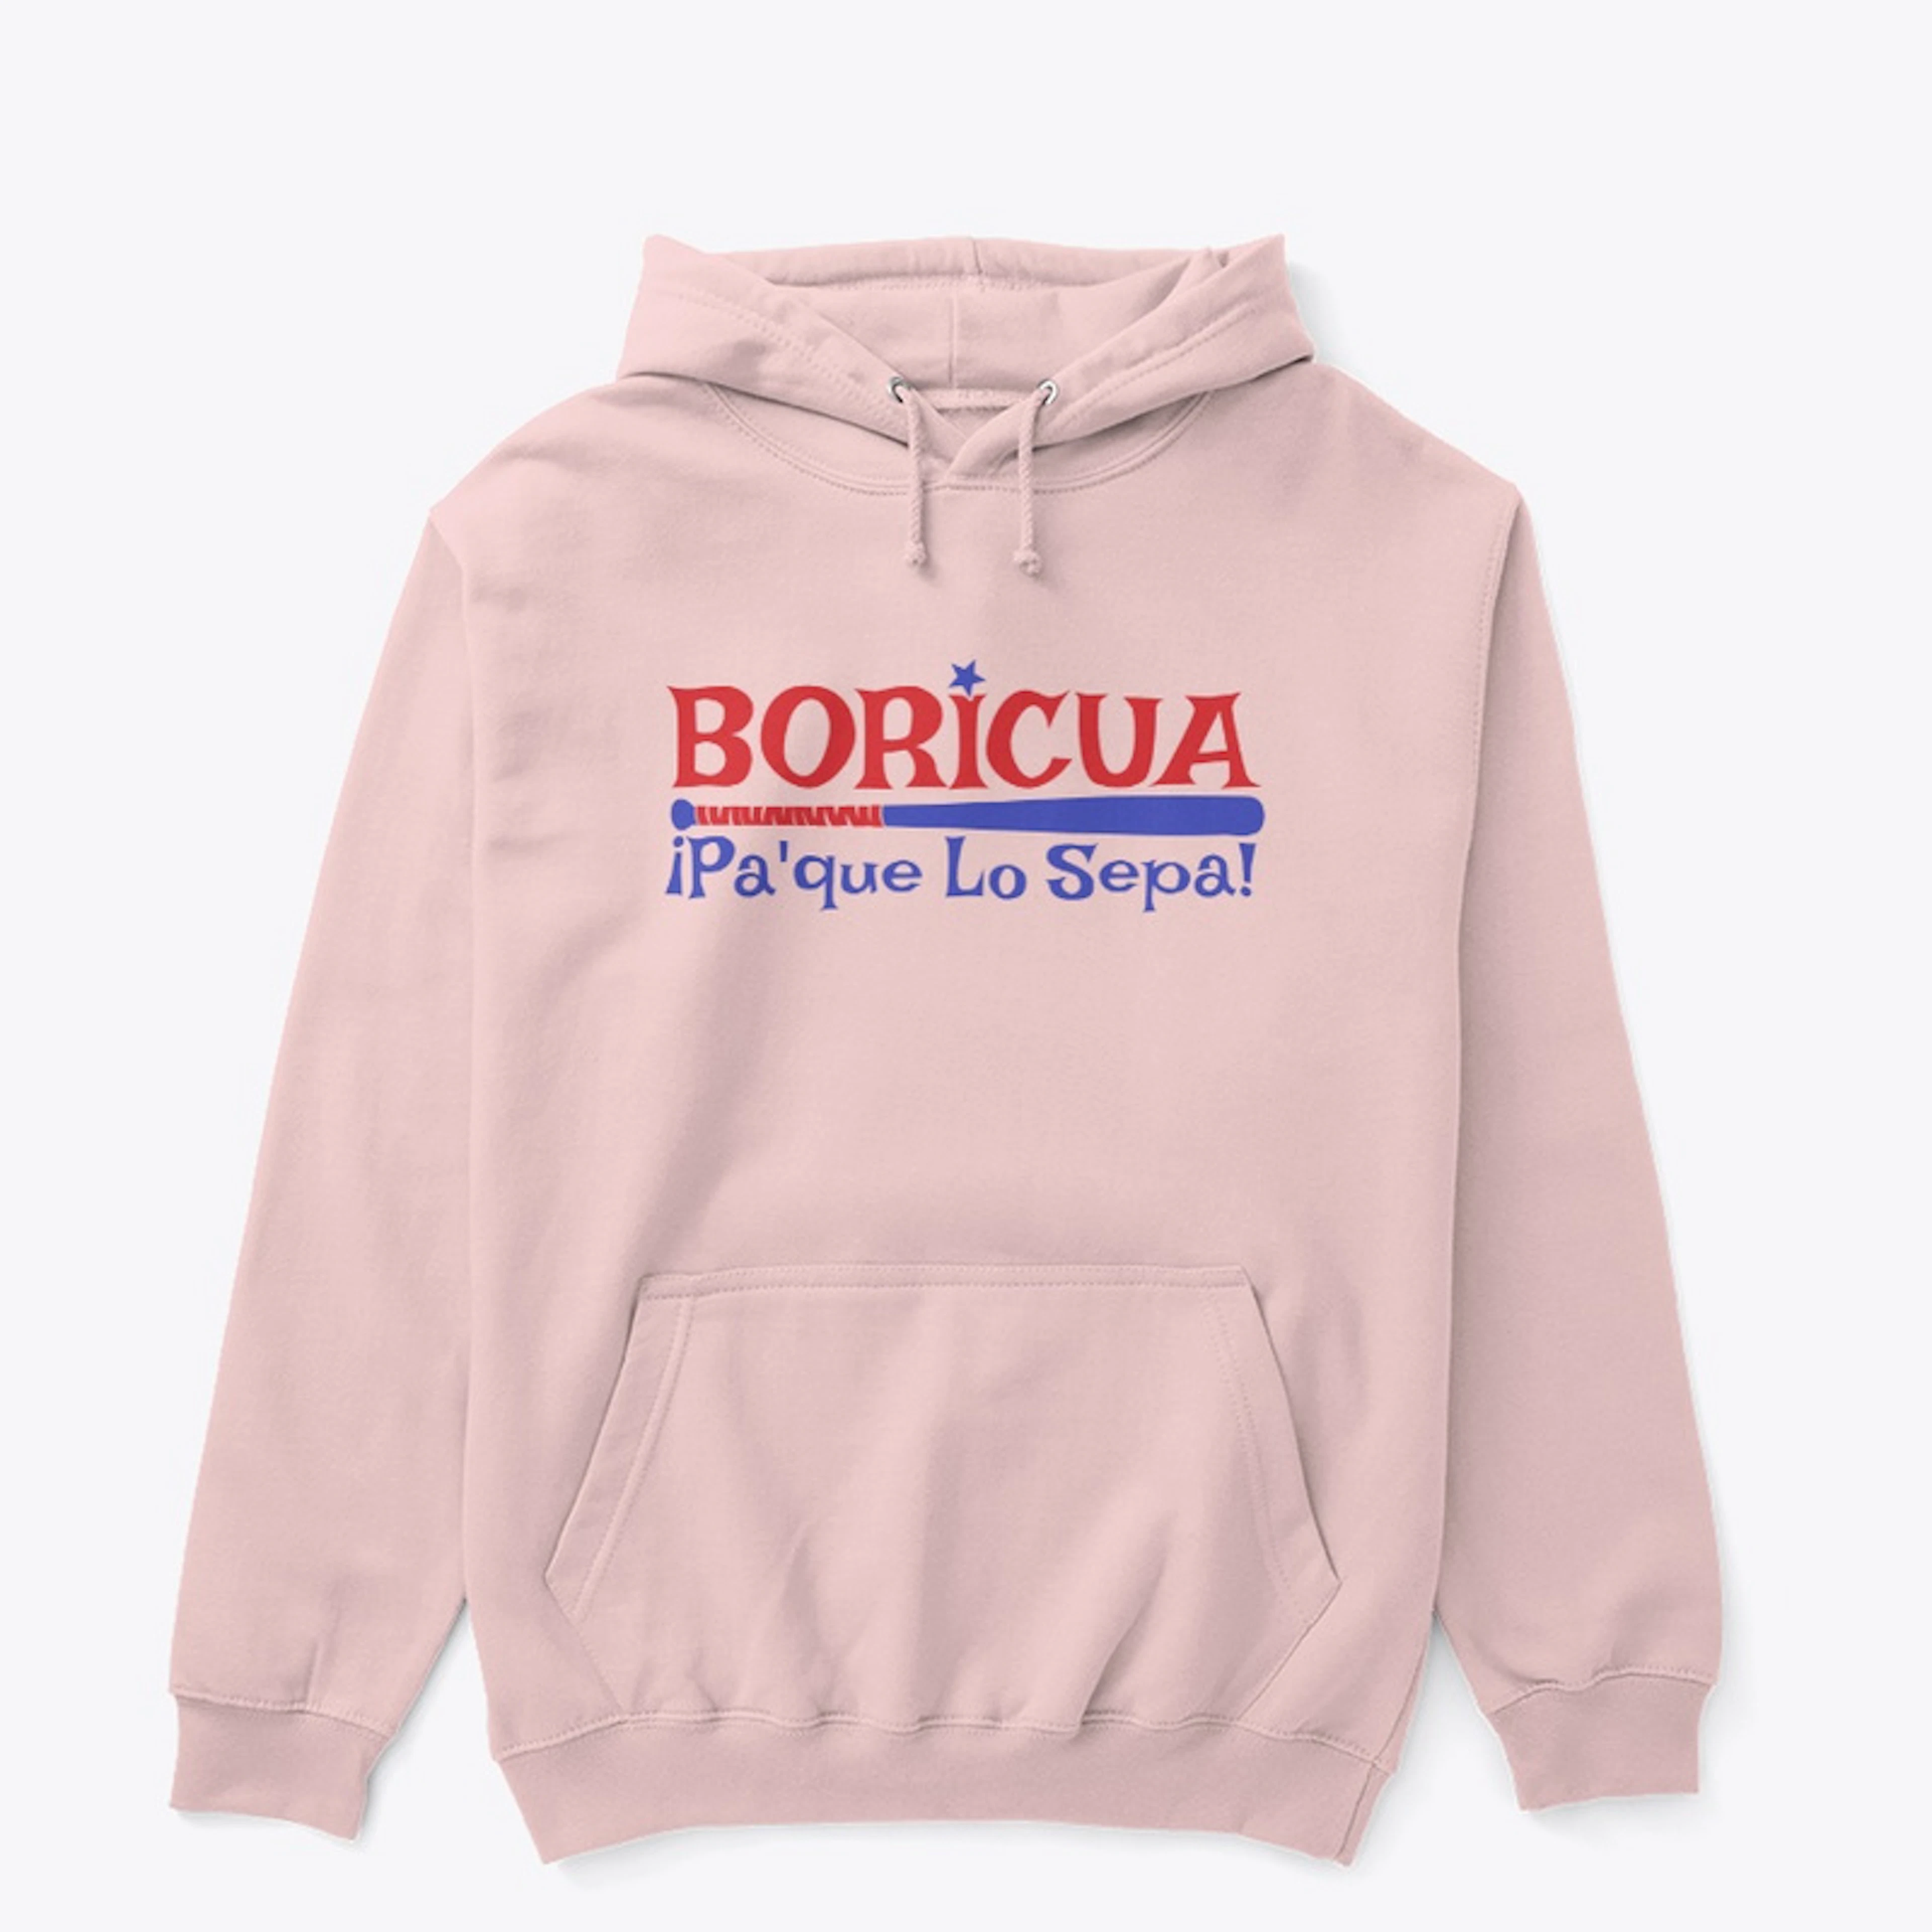 Pa'pue Lo Sepa Boricua Collection